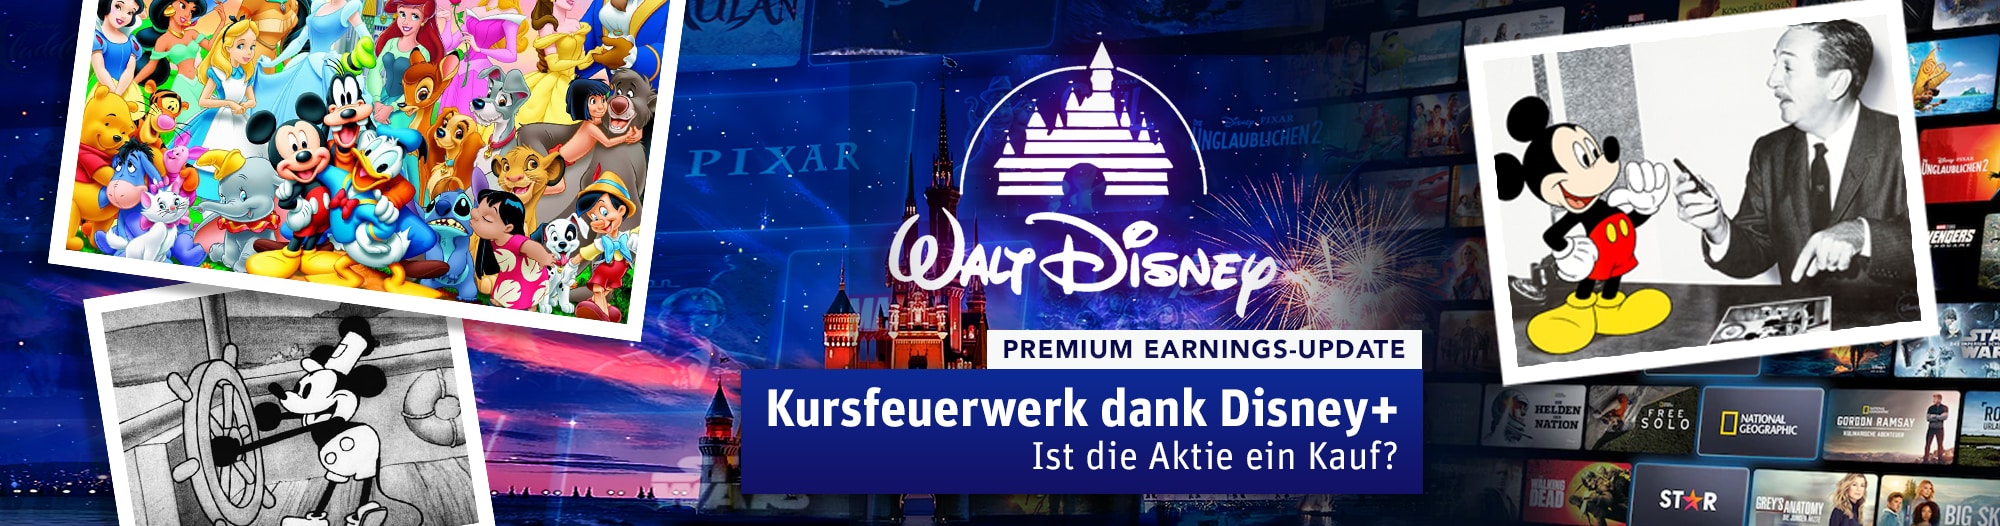 Walt Disney Earnings Update - Kursfeuerwerk dank Disney+ Header